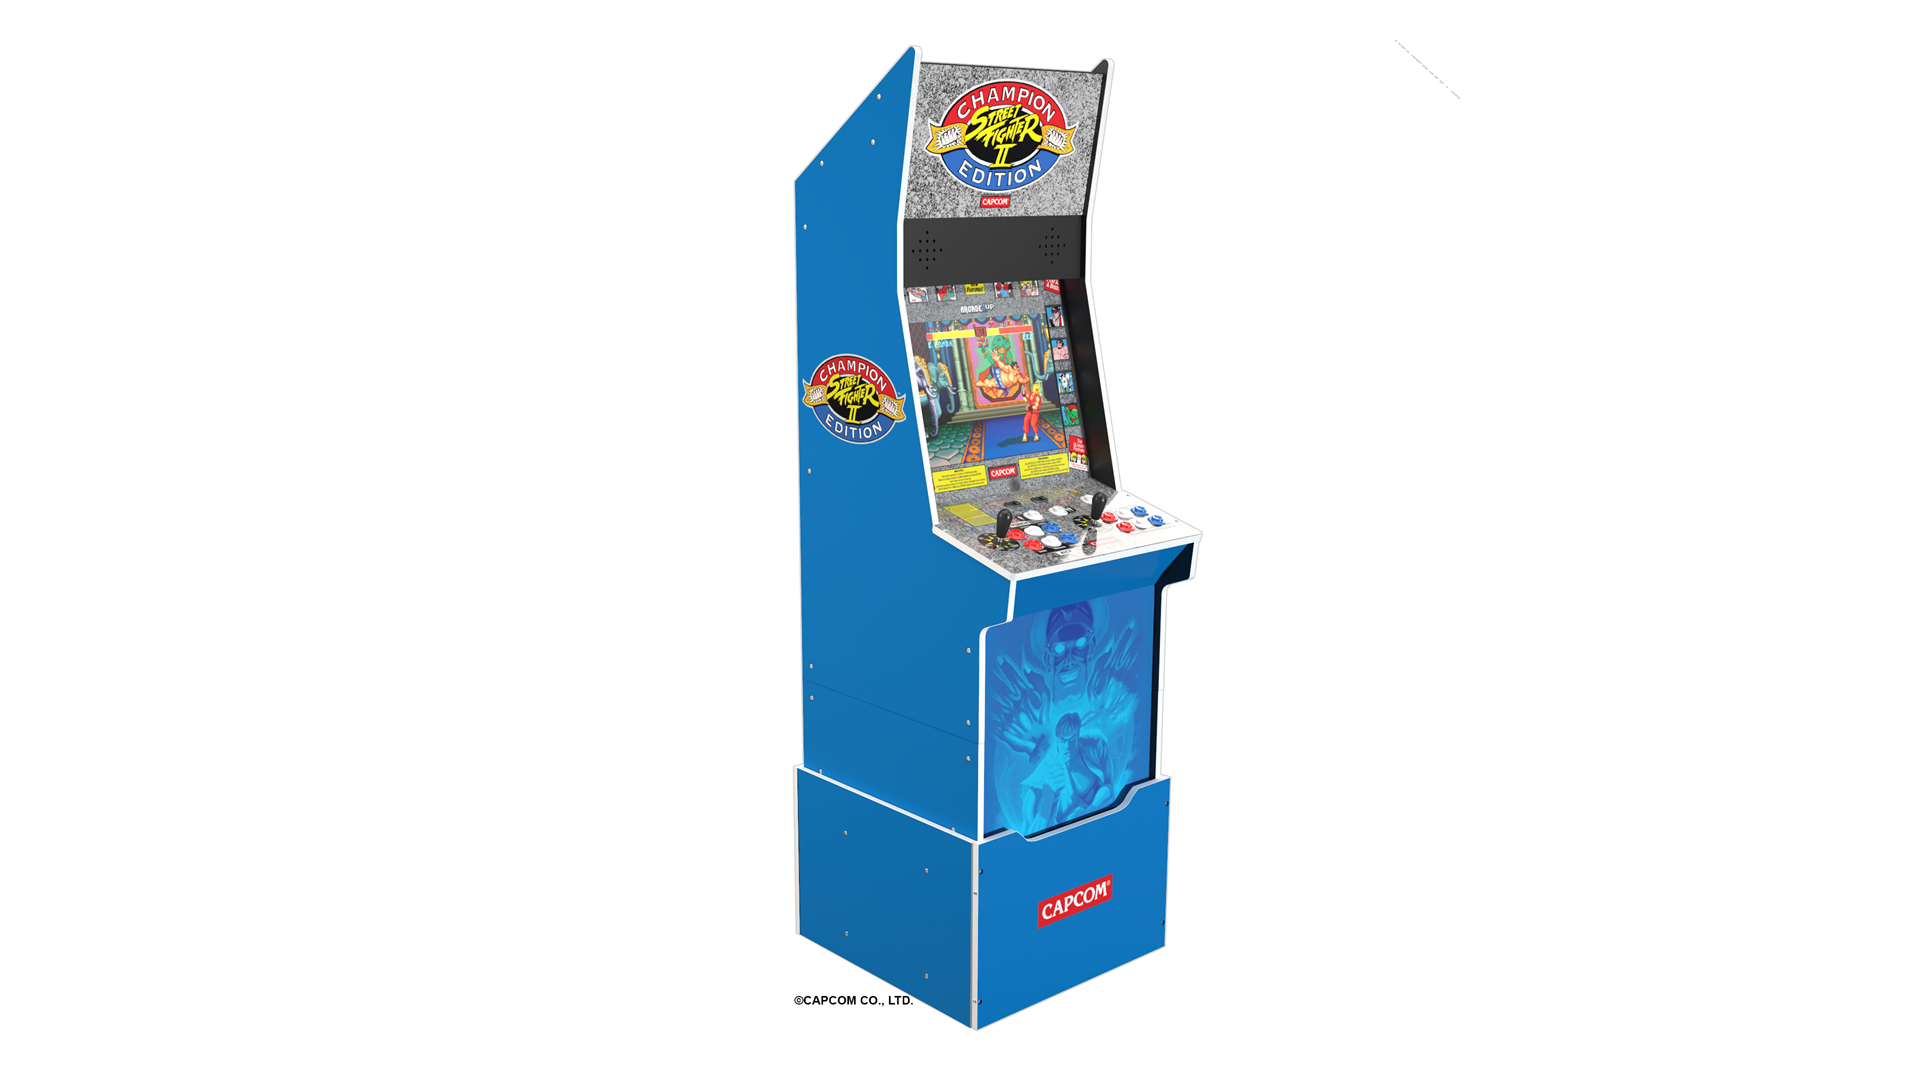 En blå 'Street Fighter II'-maskin